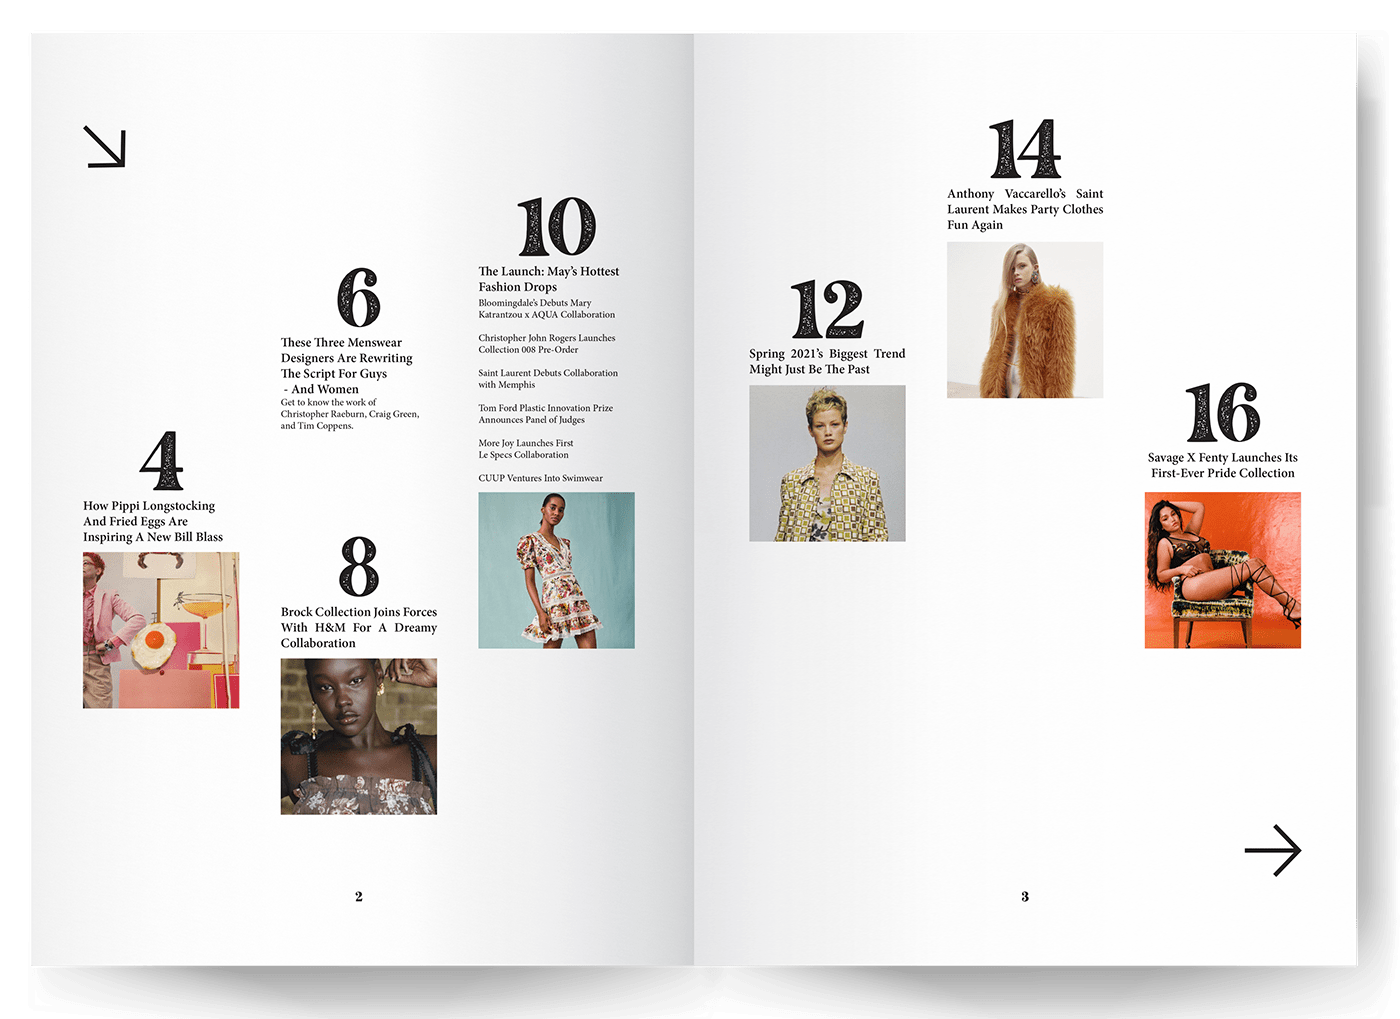 Fashion Magazine Layout Design on Behance